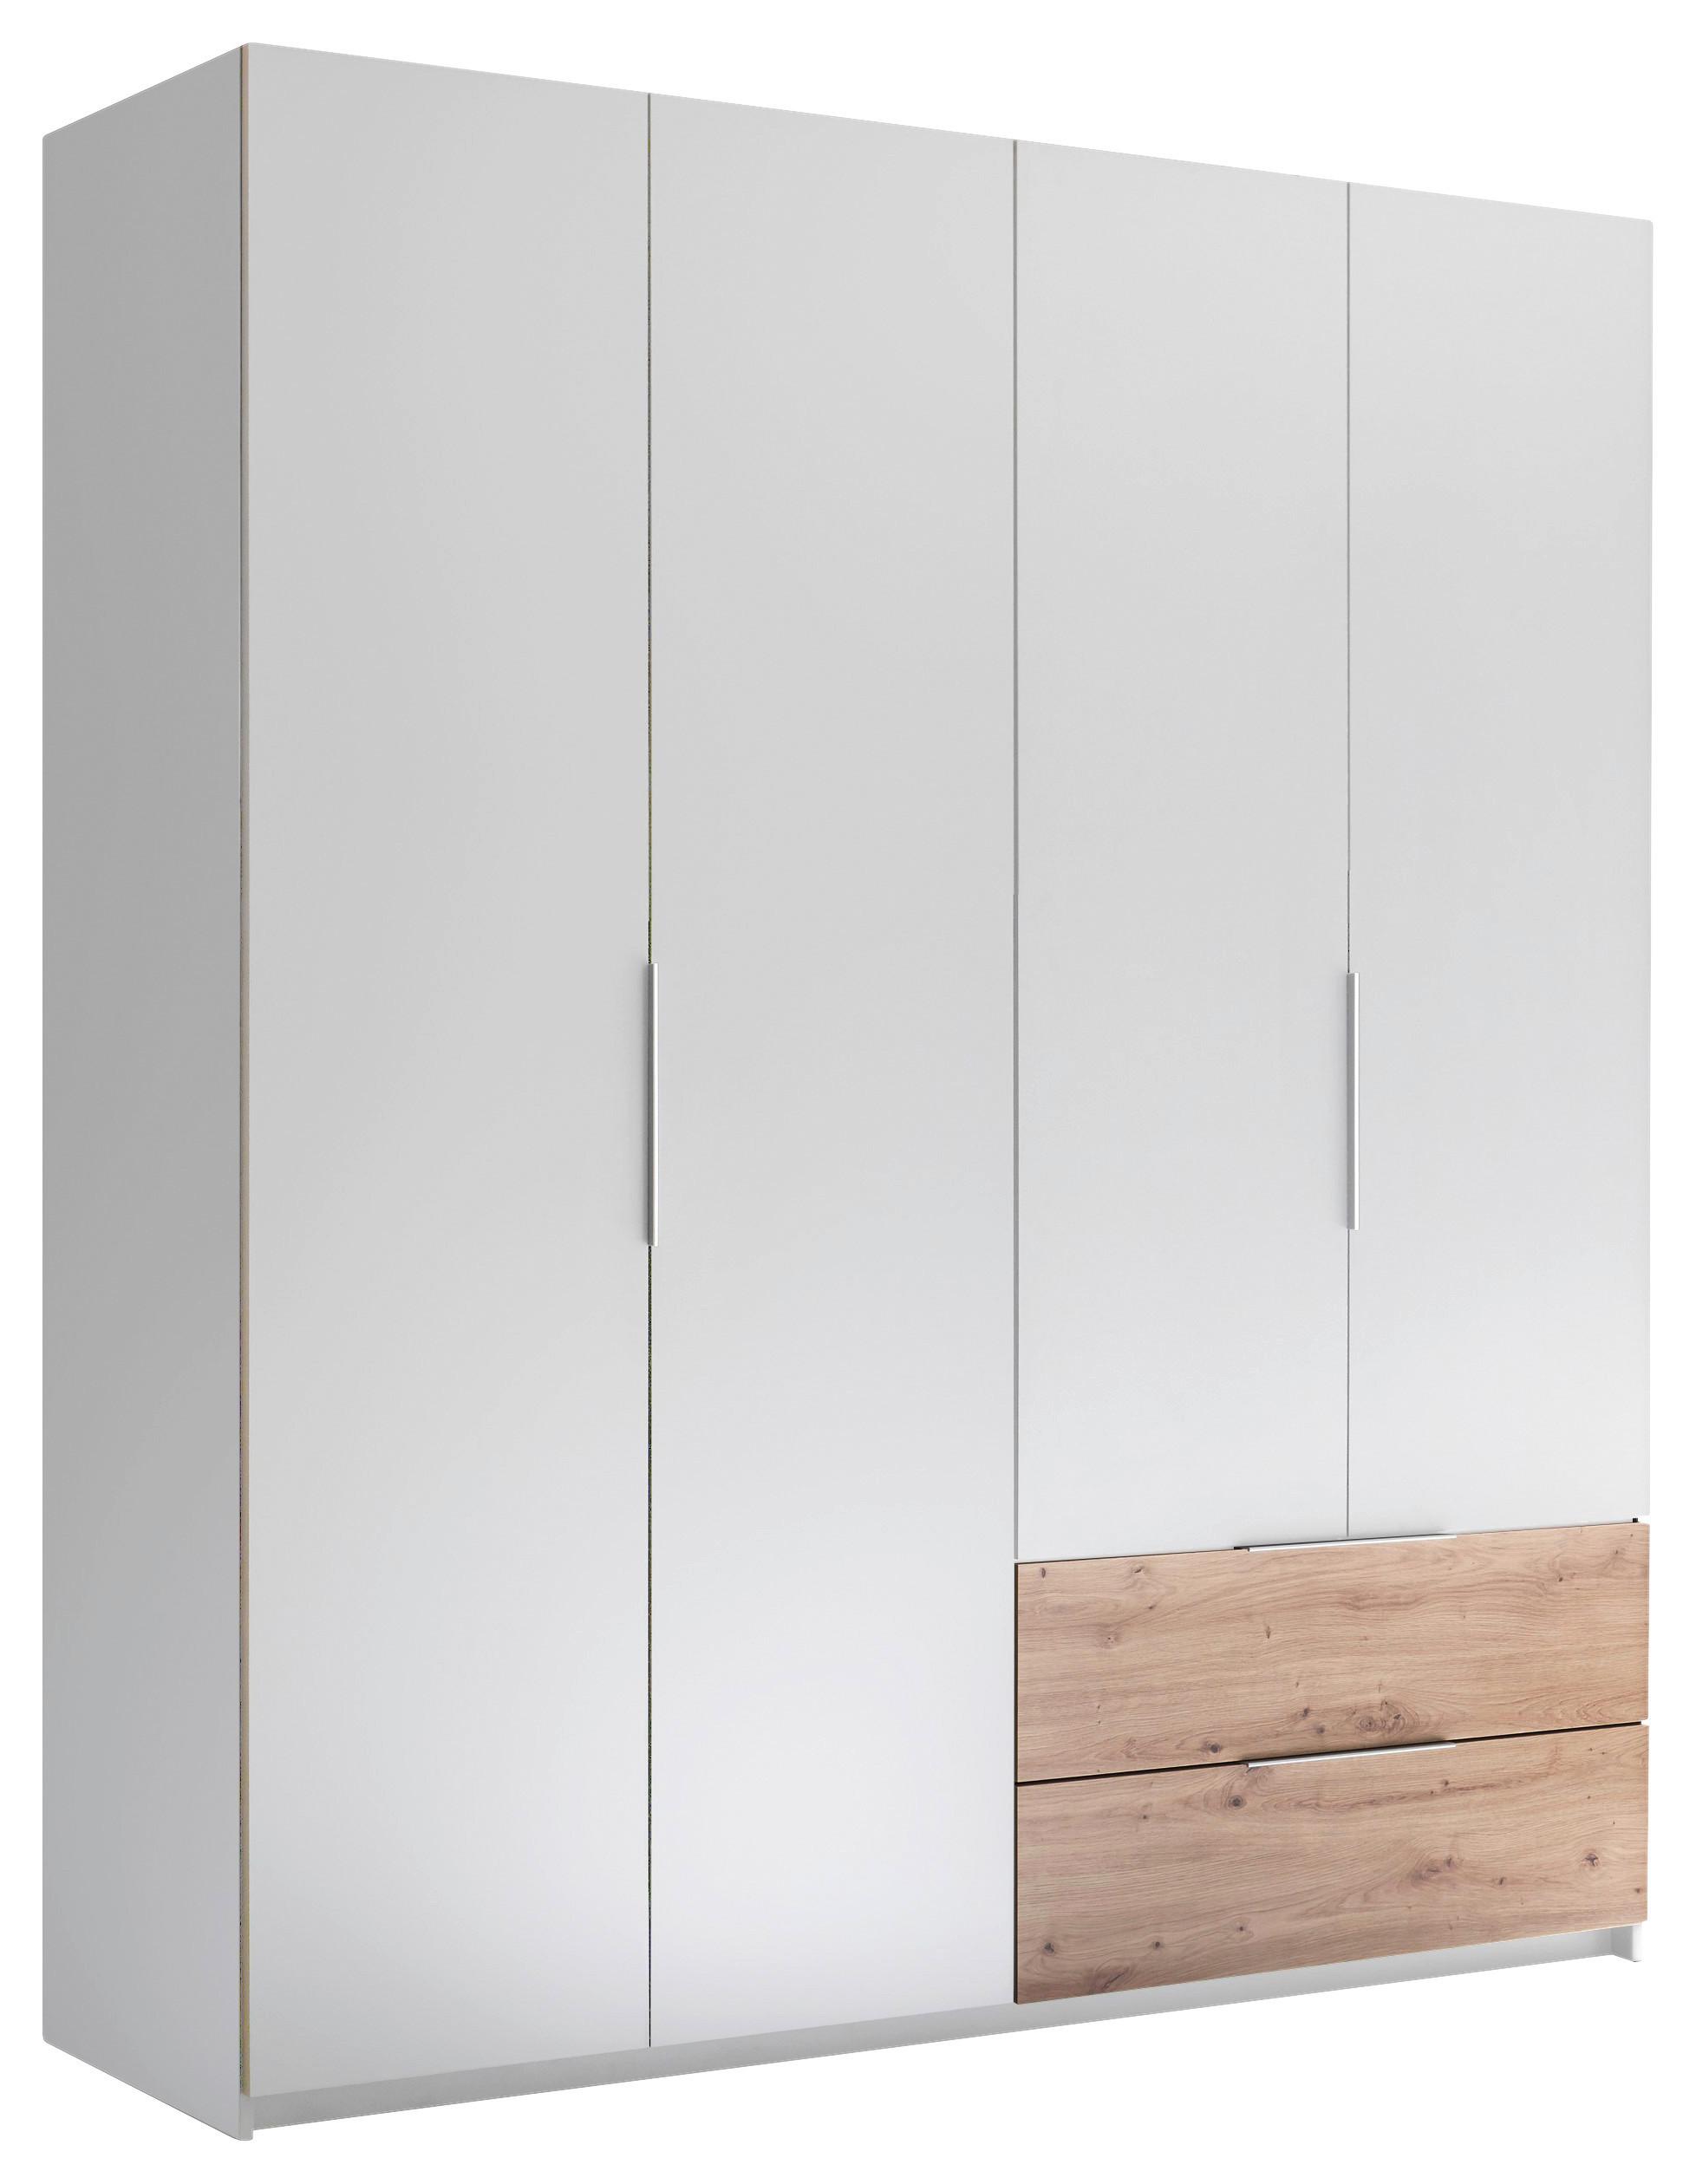 SZAFA Z DRZWIAMI SKŁADANYMI FOLD - srebrny/biały, Modern, materiał drewnopochodny/tworzywo sztuczne (182/210/59cm)